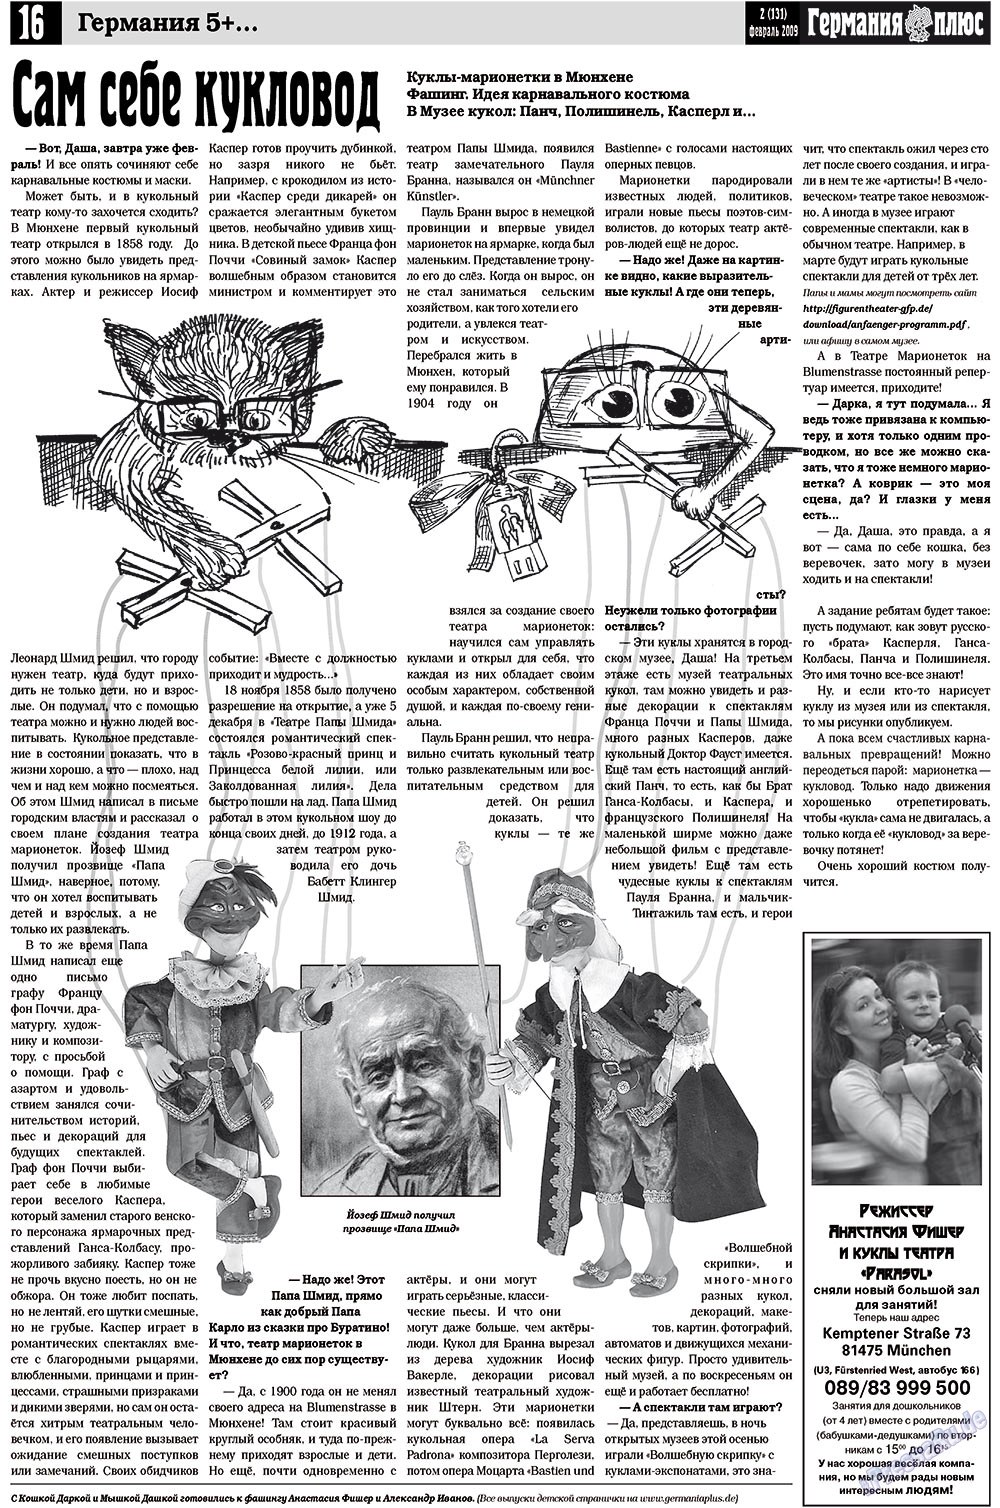 Германия плюс, газета. 2009 №2 стр.20